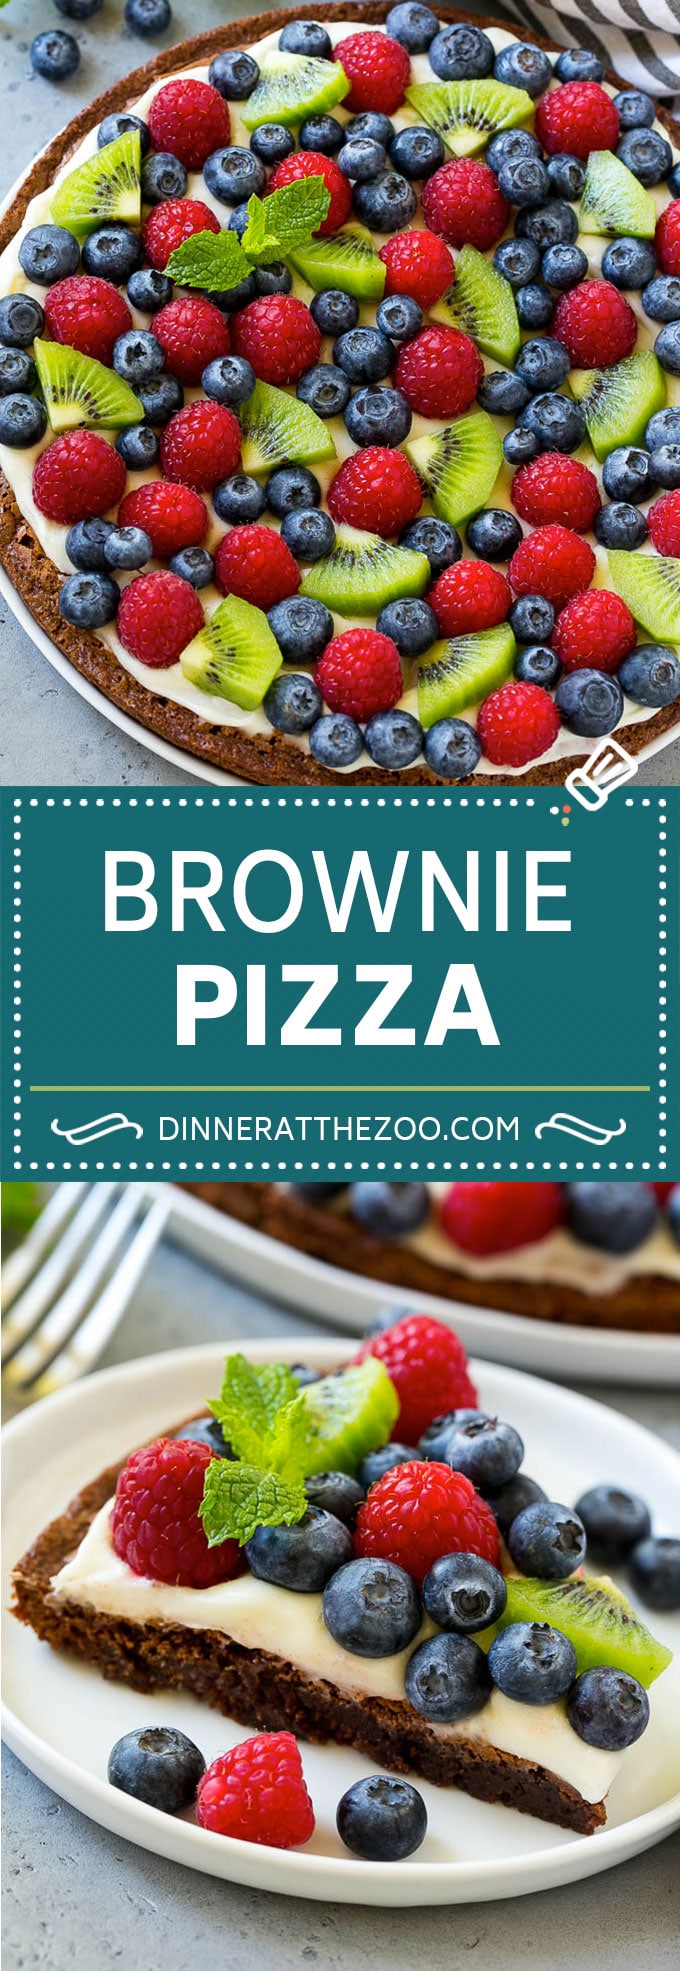 Receta de pizza de brownie |  Pizza de frutas |  Postre Pizza #brownie #pizza #chocolate #fruta #postre #dinneratthezoo